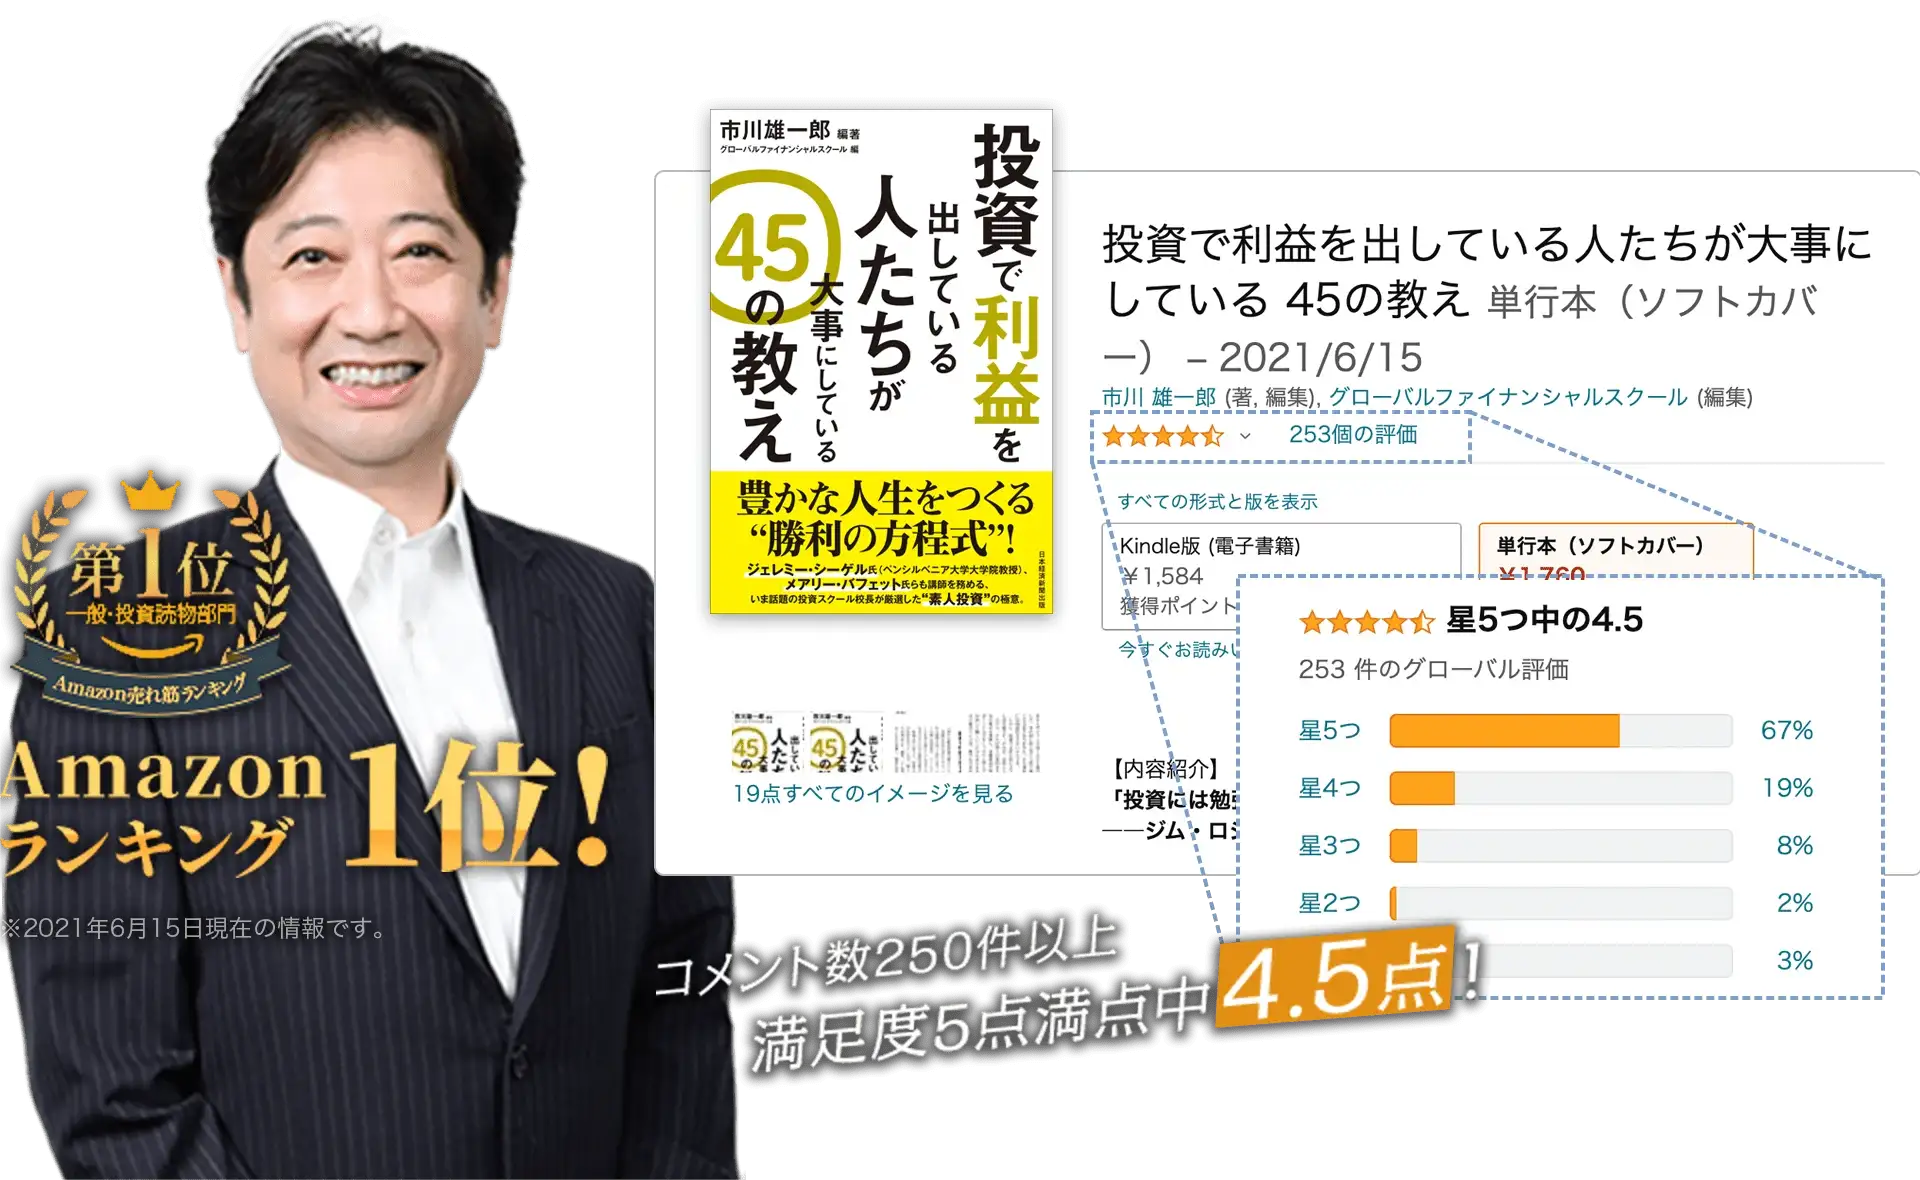 講師の市川雄一郎の書籍 Amazon ランキング1位コメント数250件以上 満足度5点満点中4.5点！